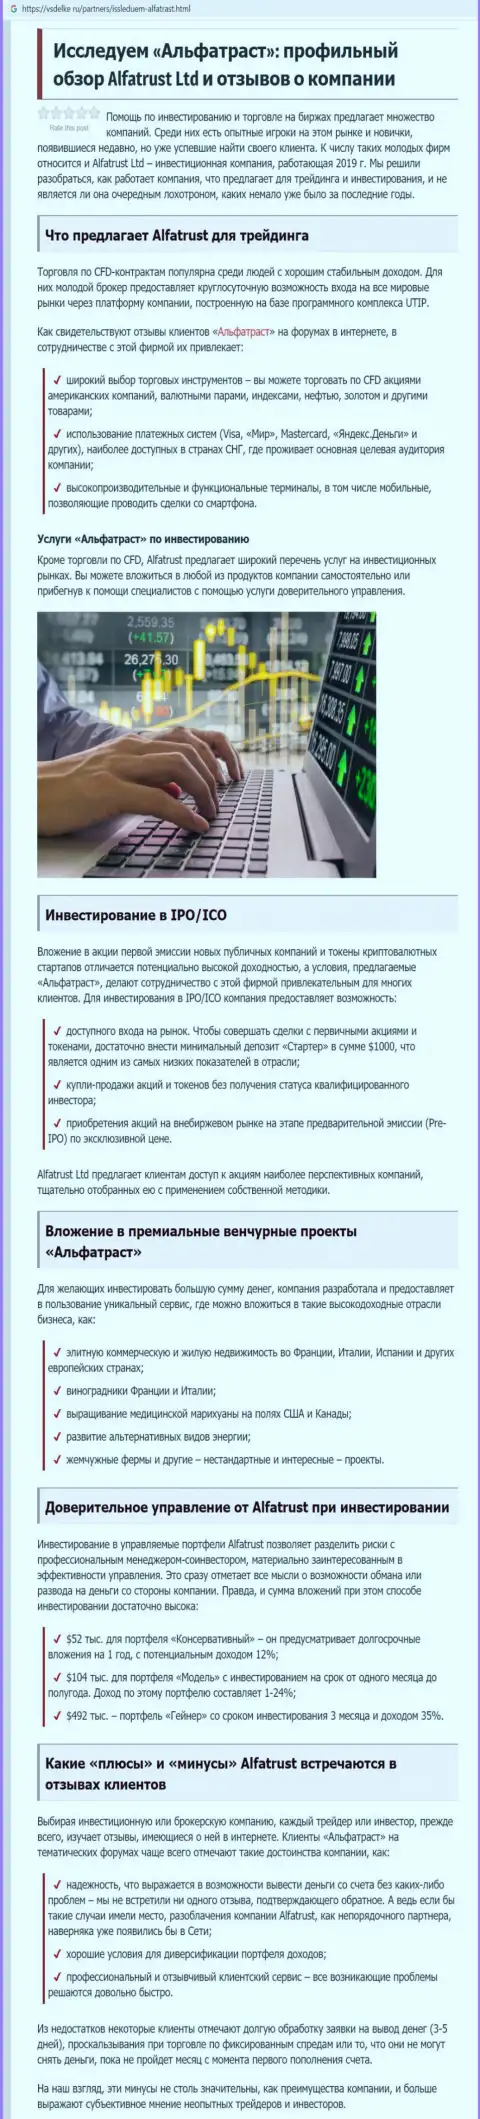 Обзорный материал о Forex брокере АльфаТраст на сайте vsdelke ru